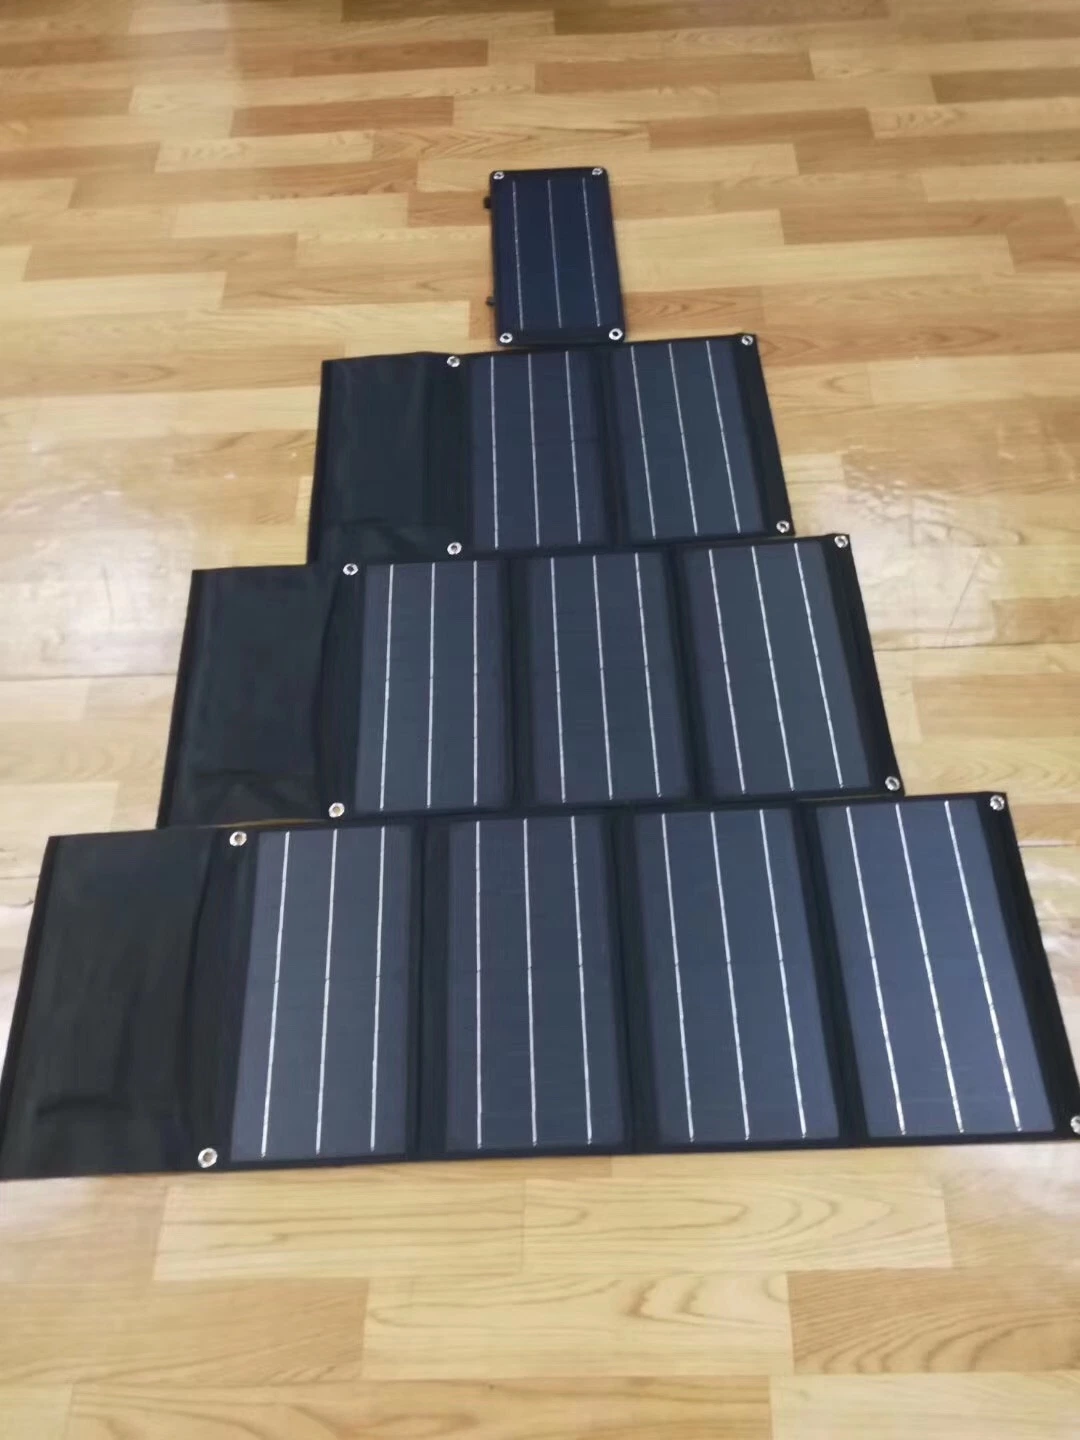 شاحن اللوحة الشمسية بقدرة 10 واط لشحن الهاتف المحمول والكمبيوتر المحمول والكمبيوتر اللوحي